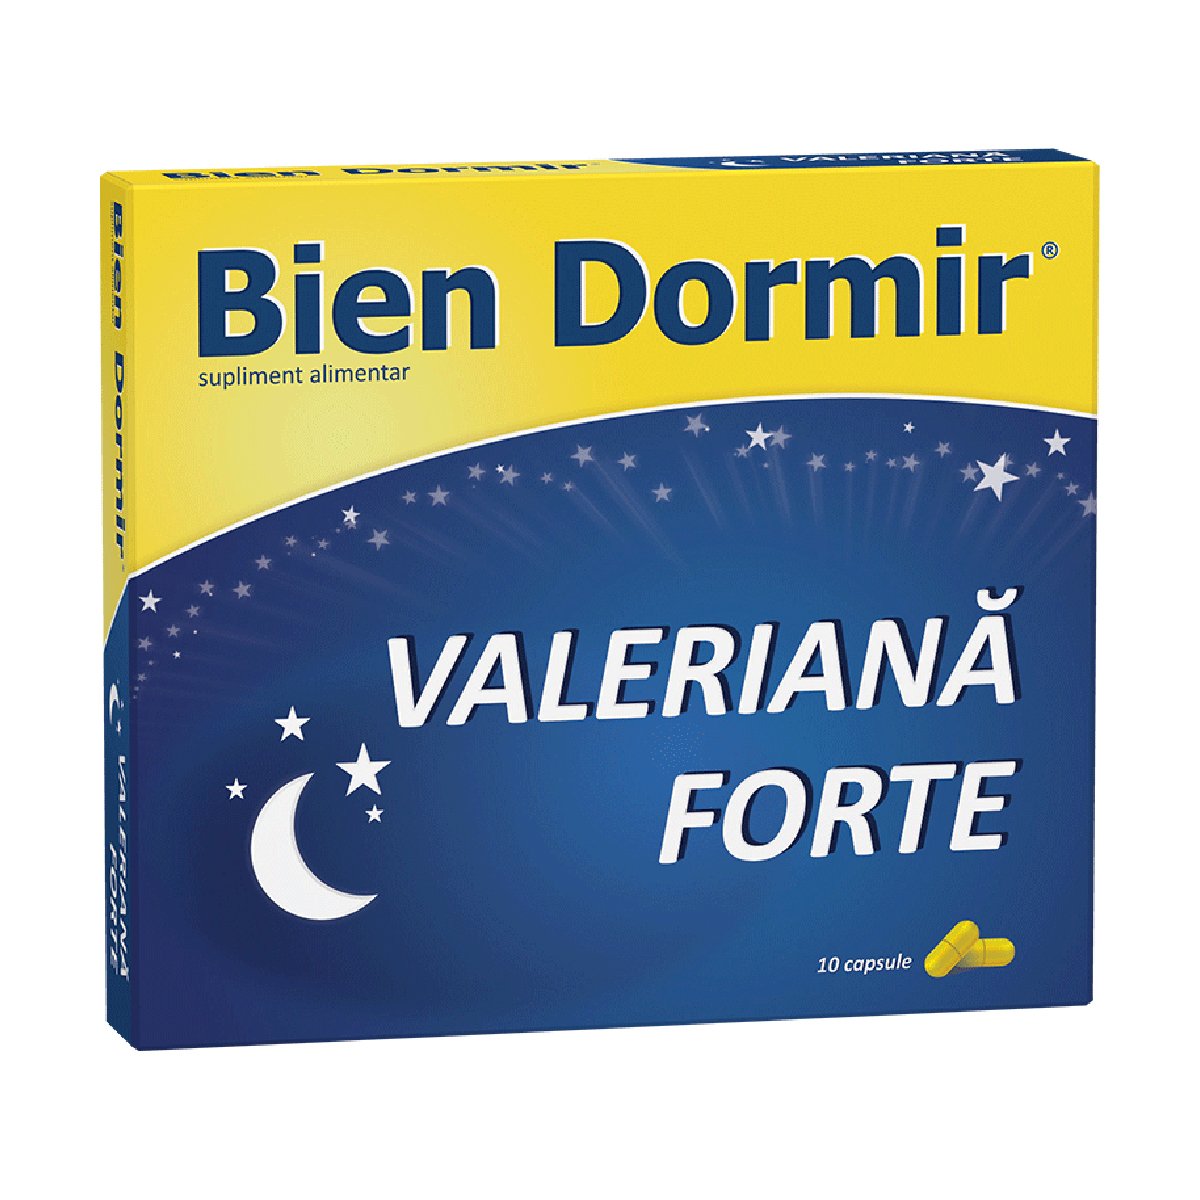 Bien Dormir + Valeriana forte, 10 capsule Bien